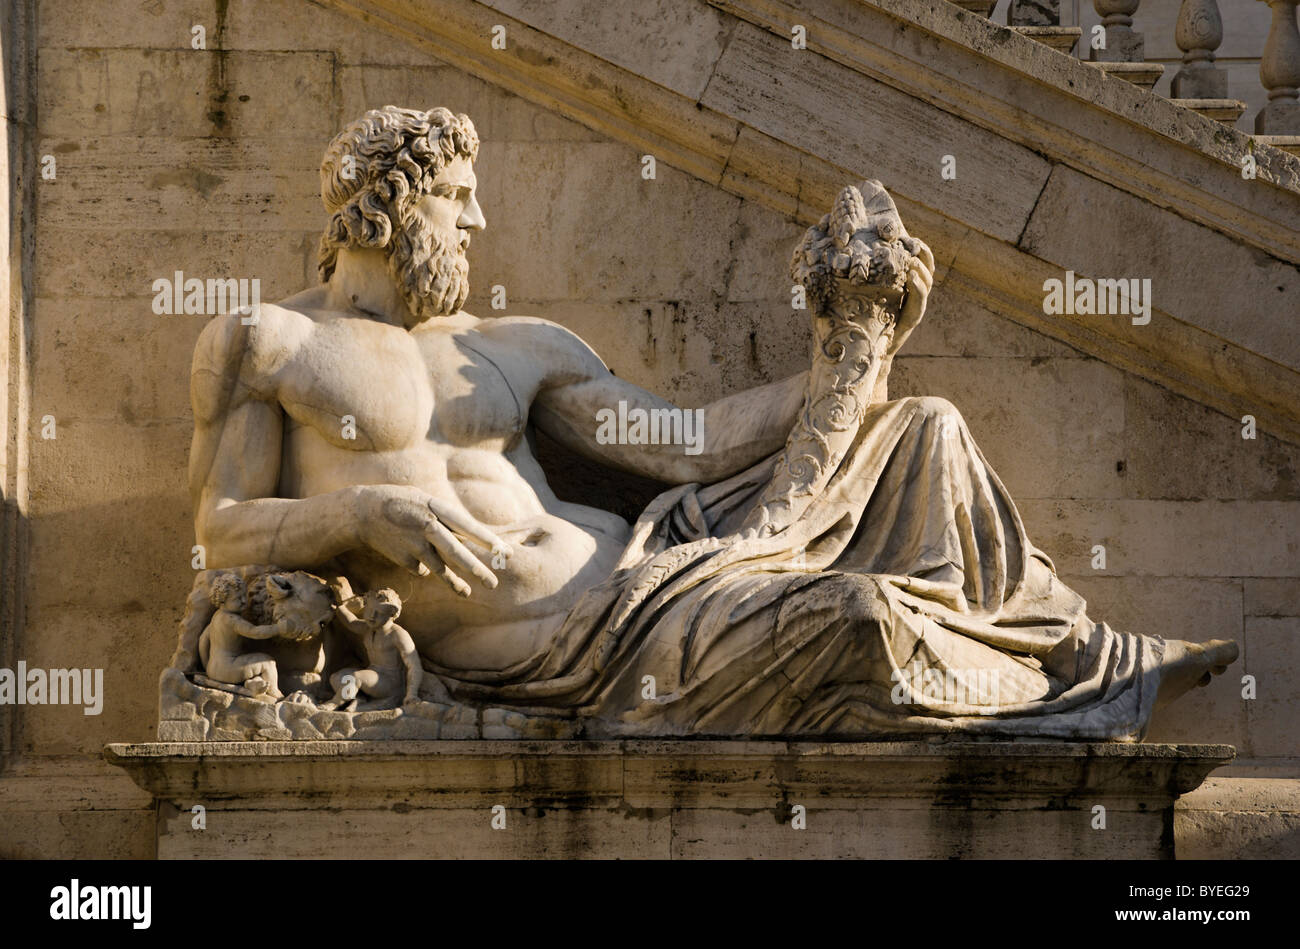 Río Tíber (Tevere) estatua en la Piazza del Campidoglio, Roma, Italia Foto de stock